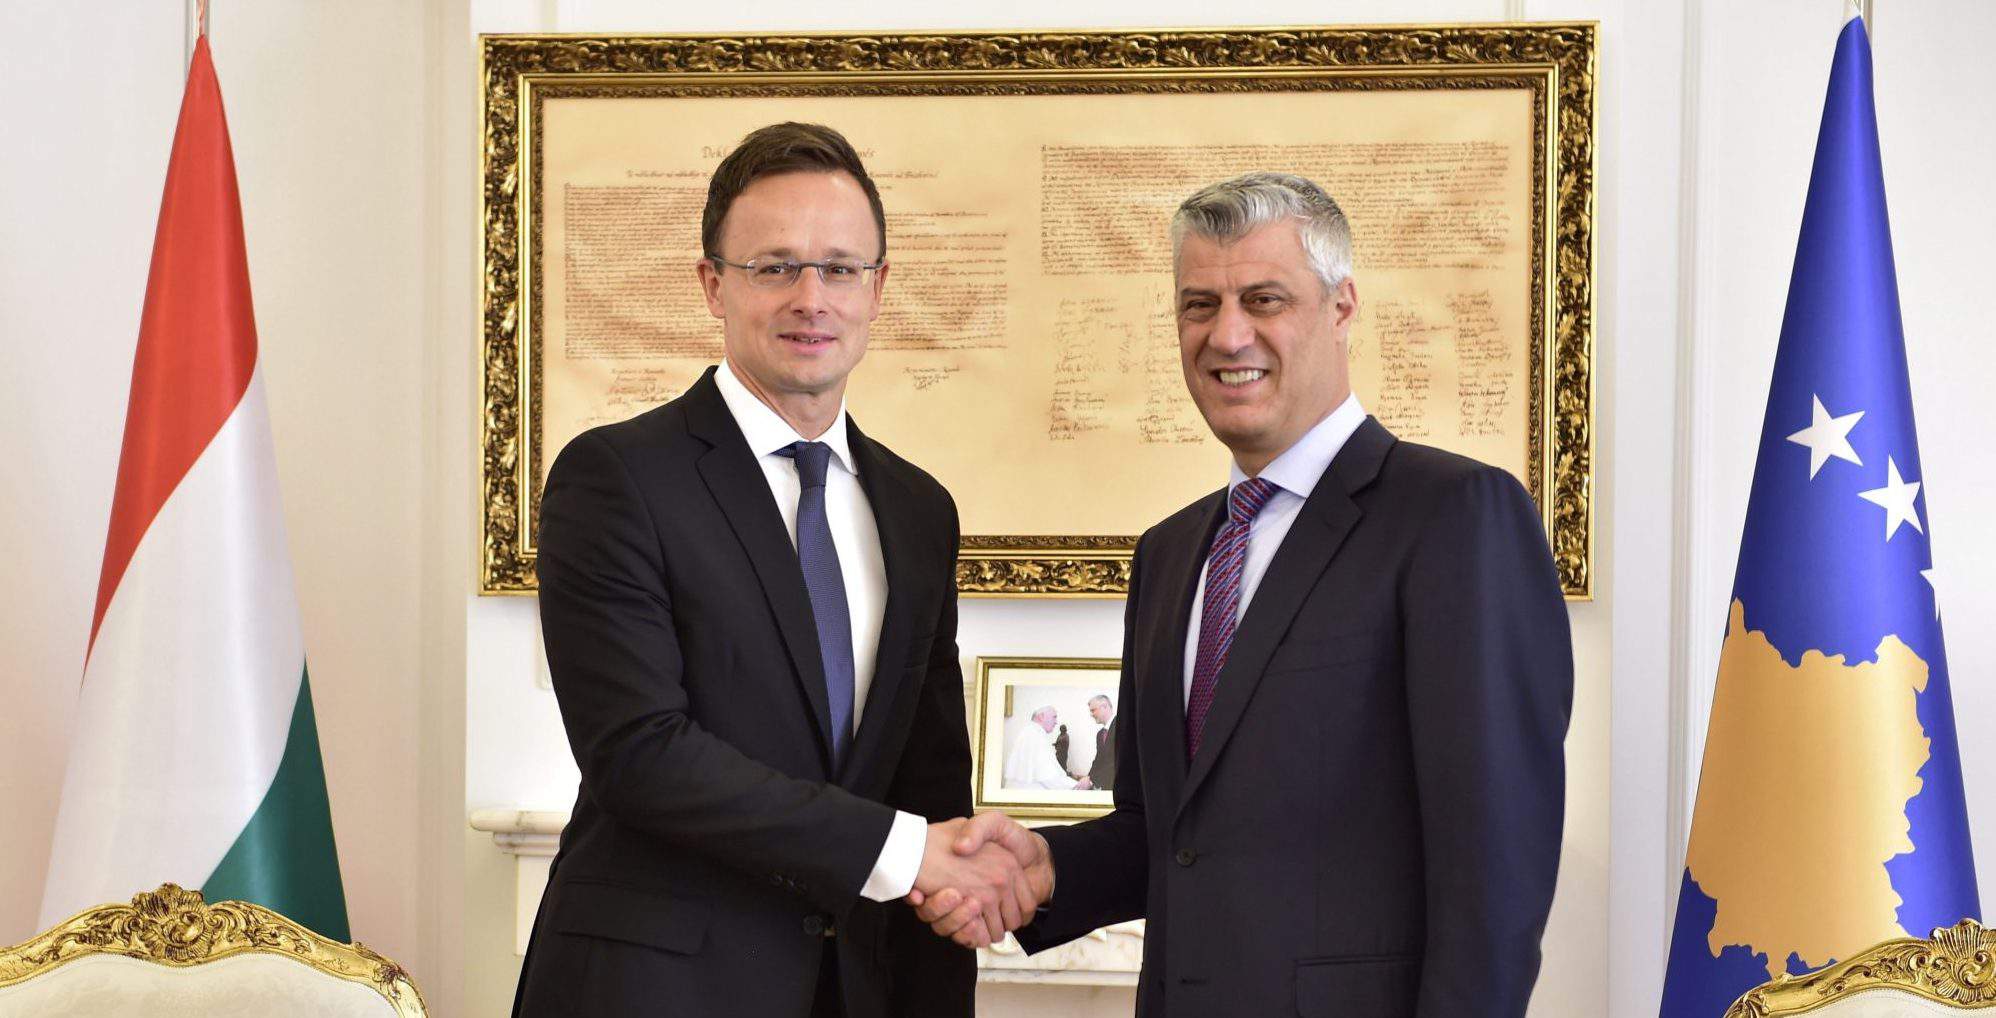 Pristina ministre hongrois des affaires étrangères